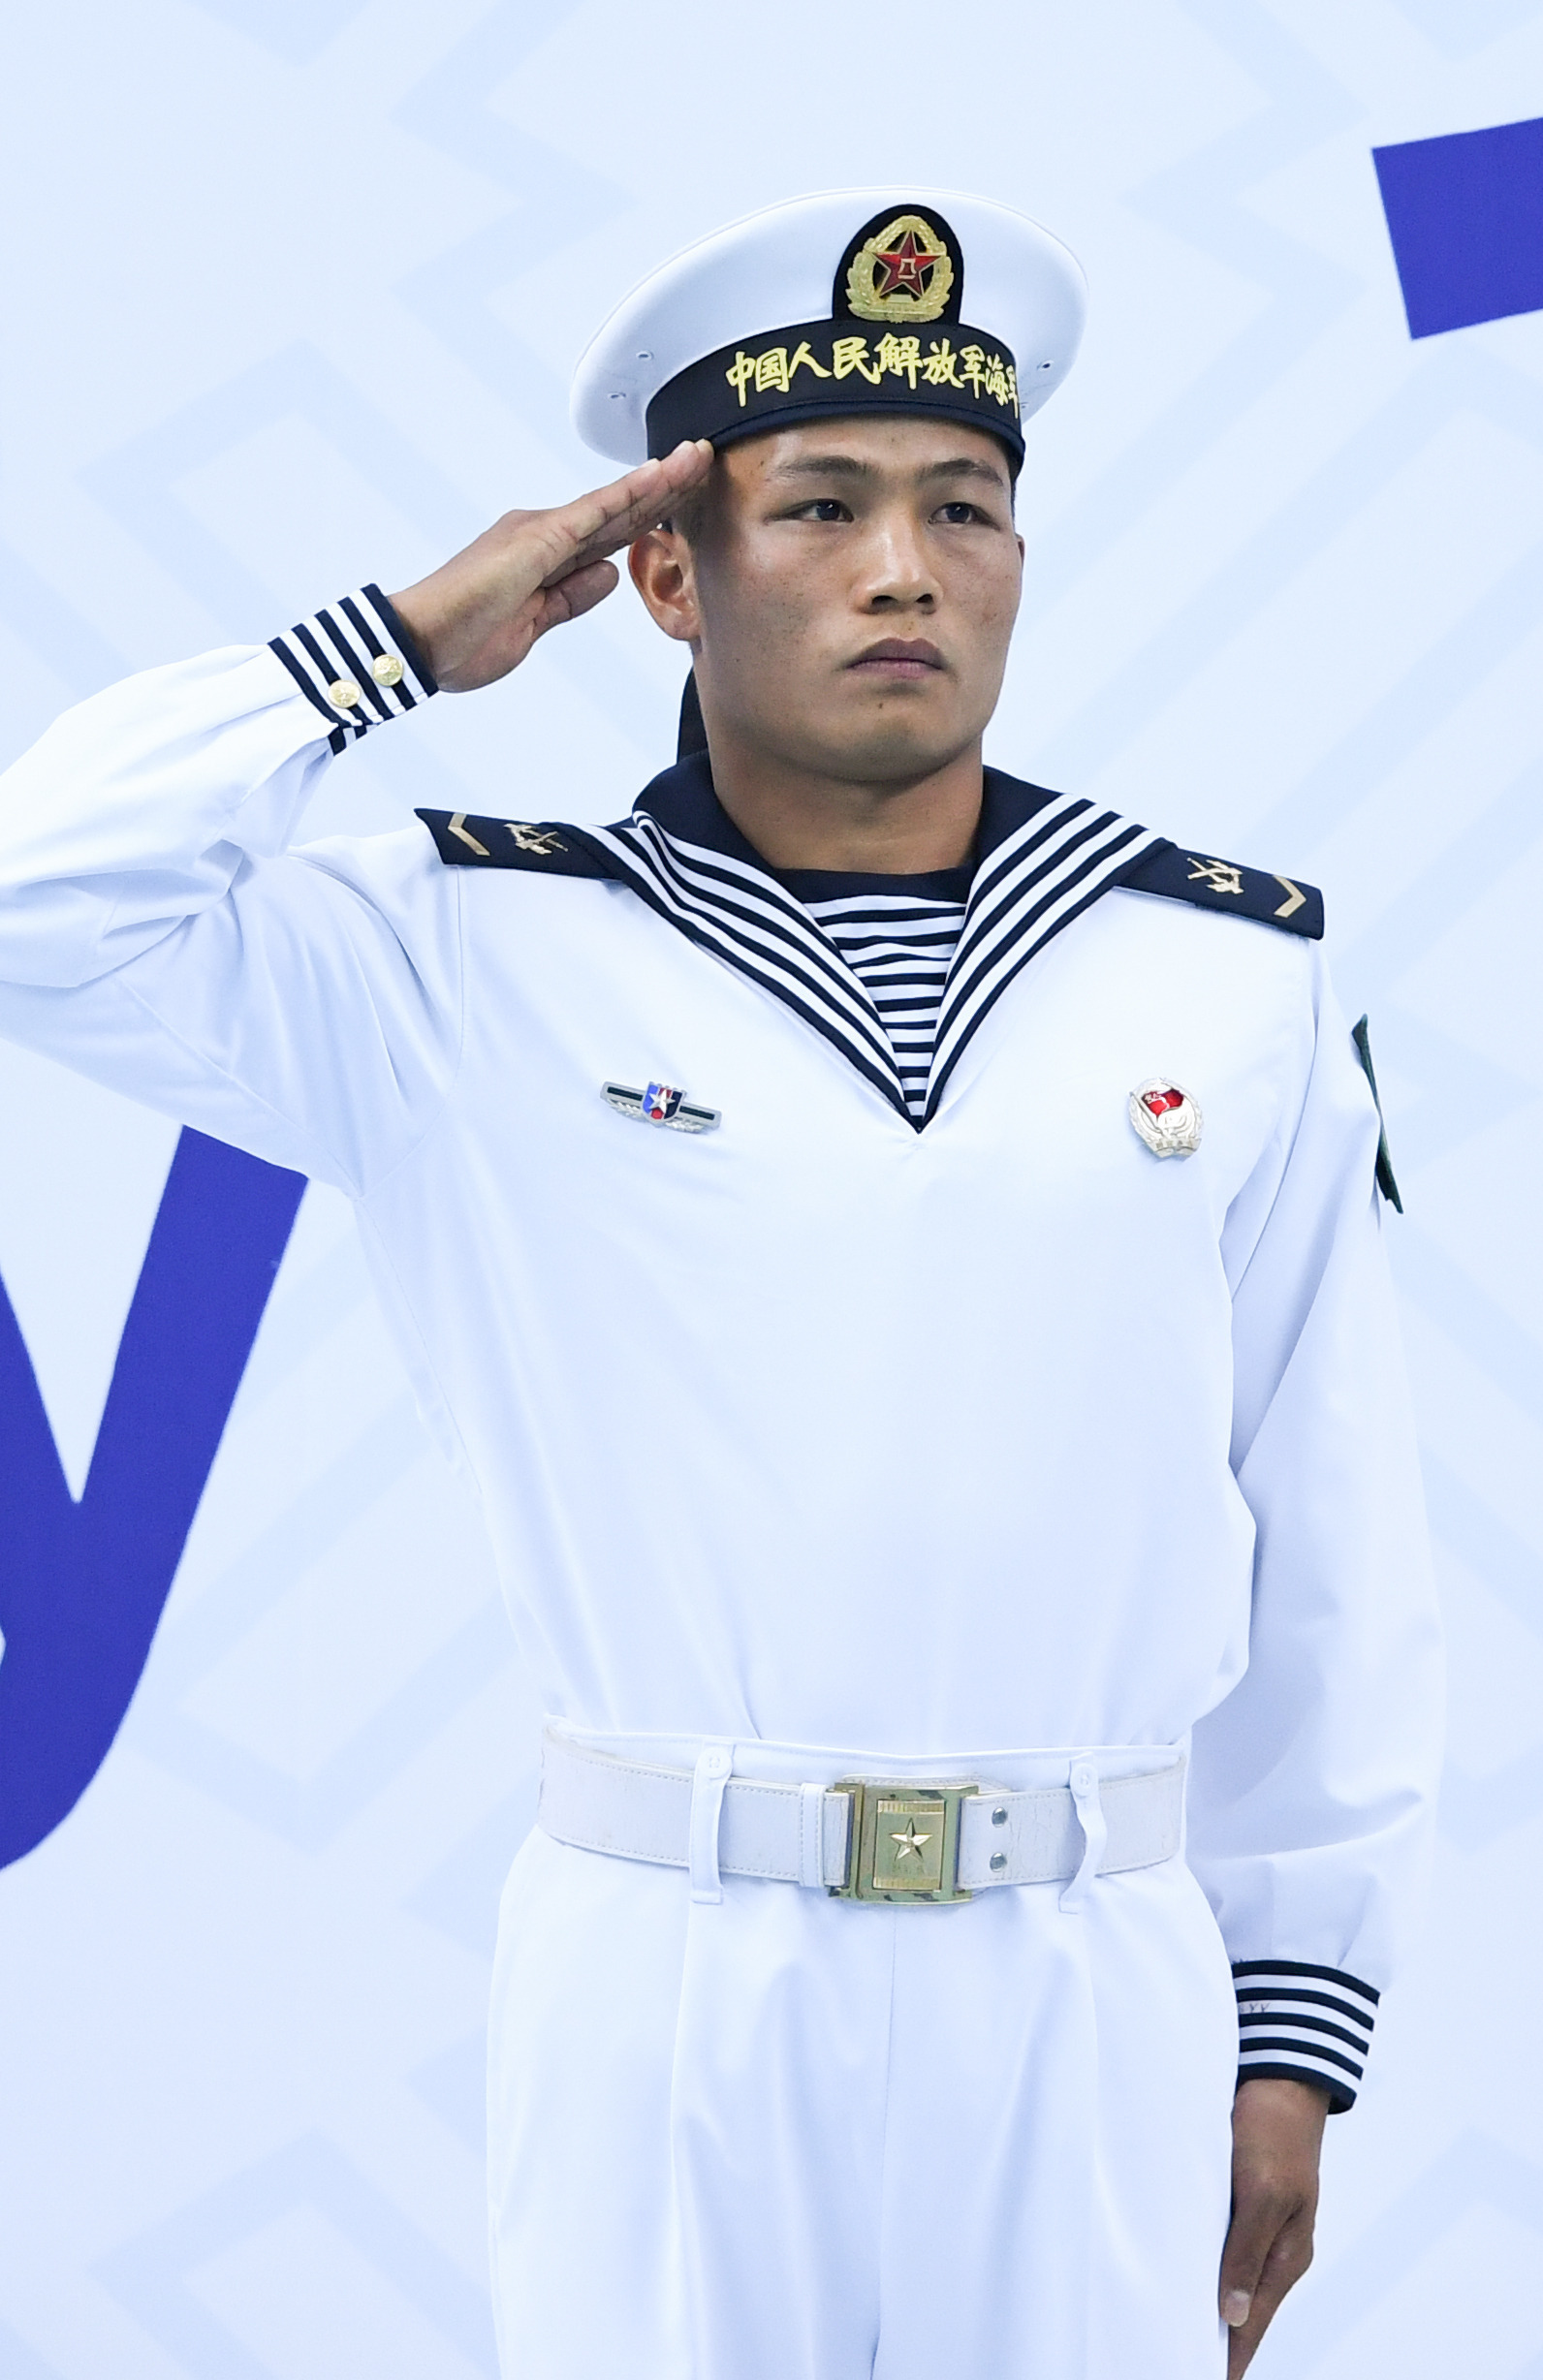 现役海军服装图片男图片